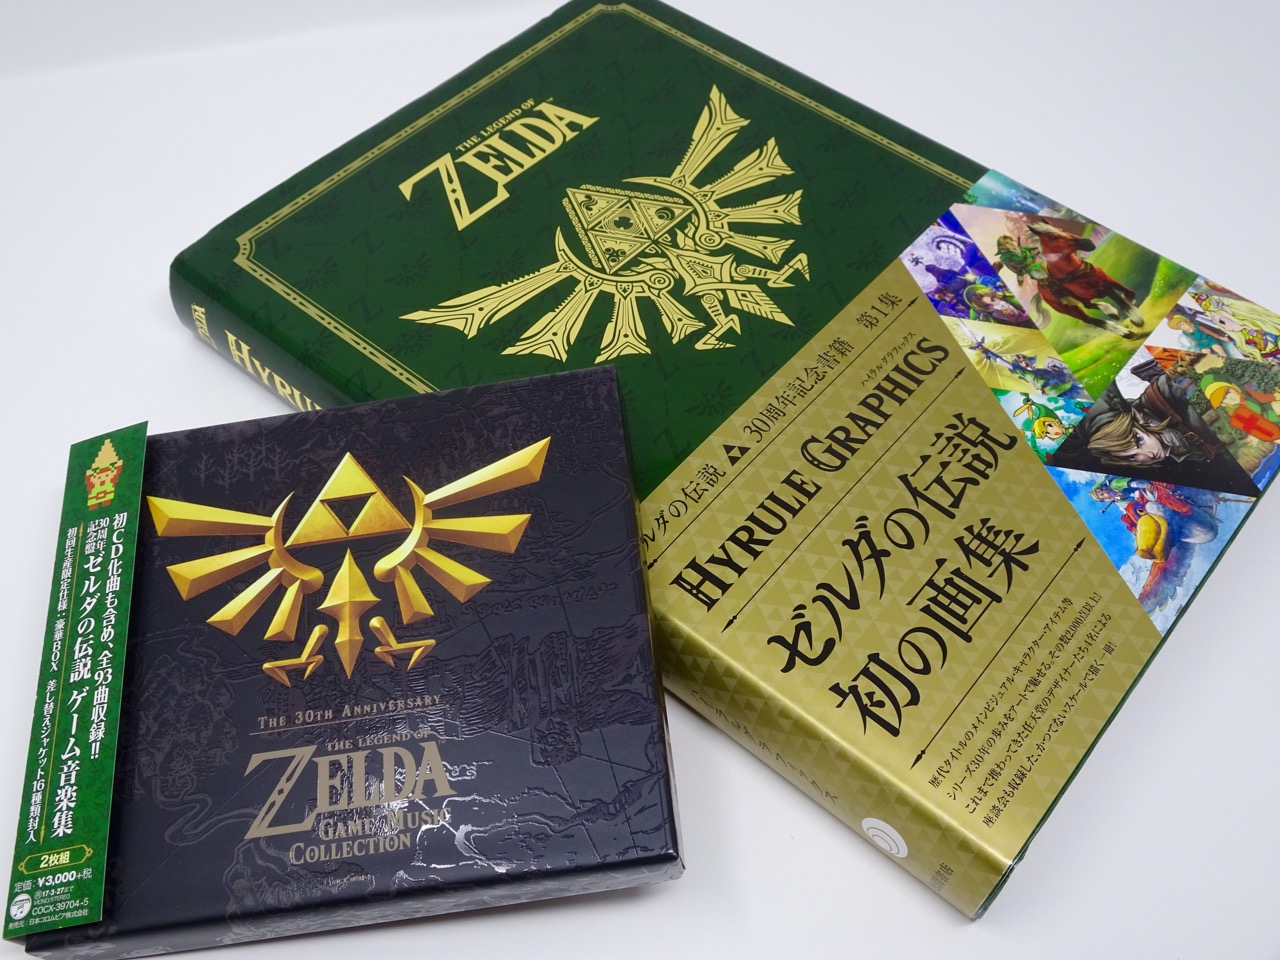 Lancement officiel de la peluche Zelda dans Breath of the Wild en novembre  2020 au Japon